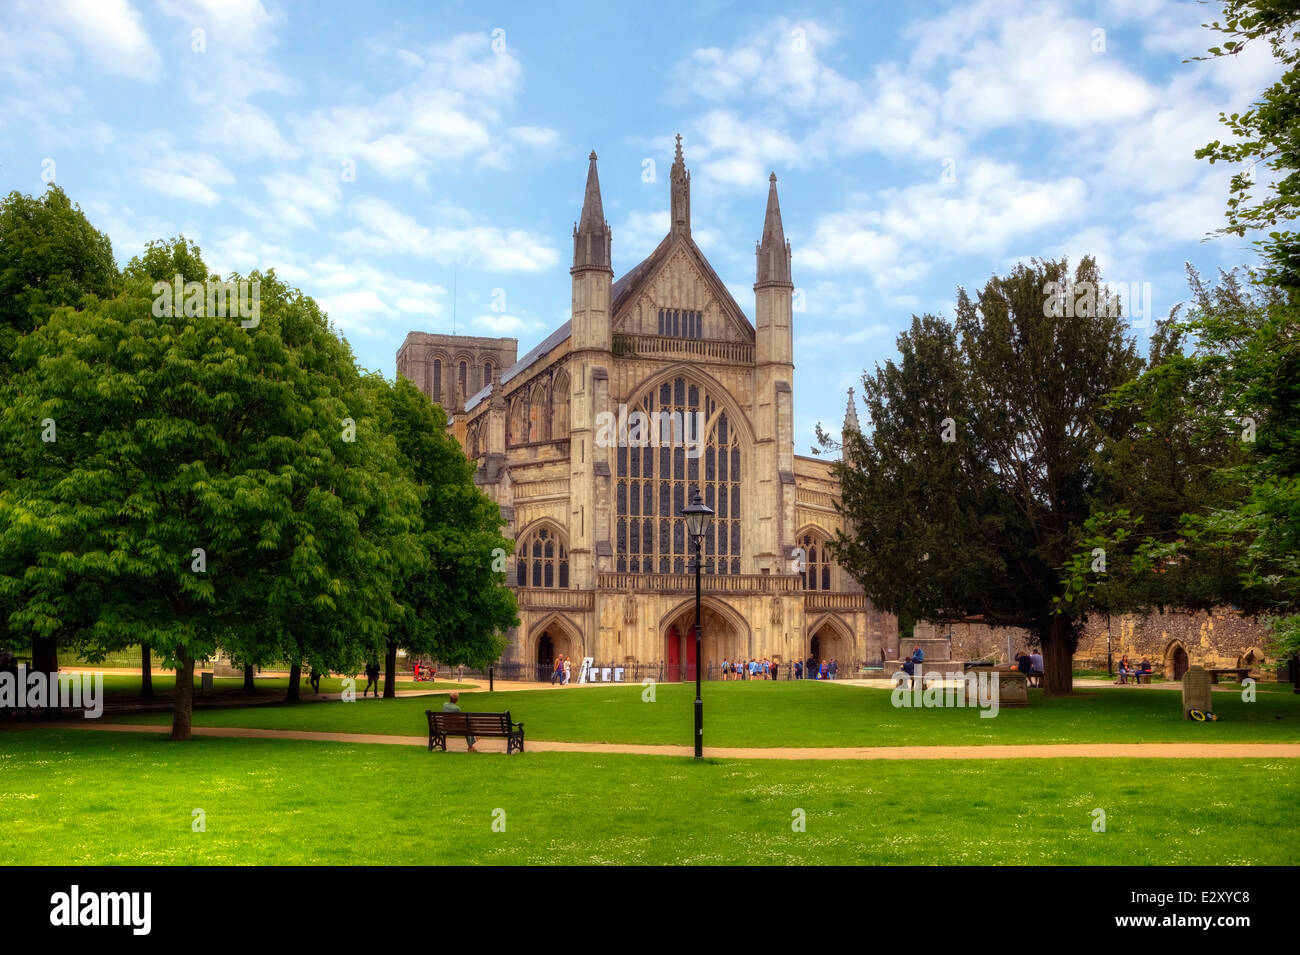 La cathédrale de Winchester, Winchester, Hampshire, Angleterre, Royaume-Uni Banque D'Images